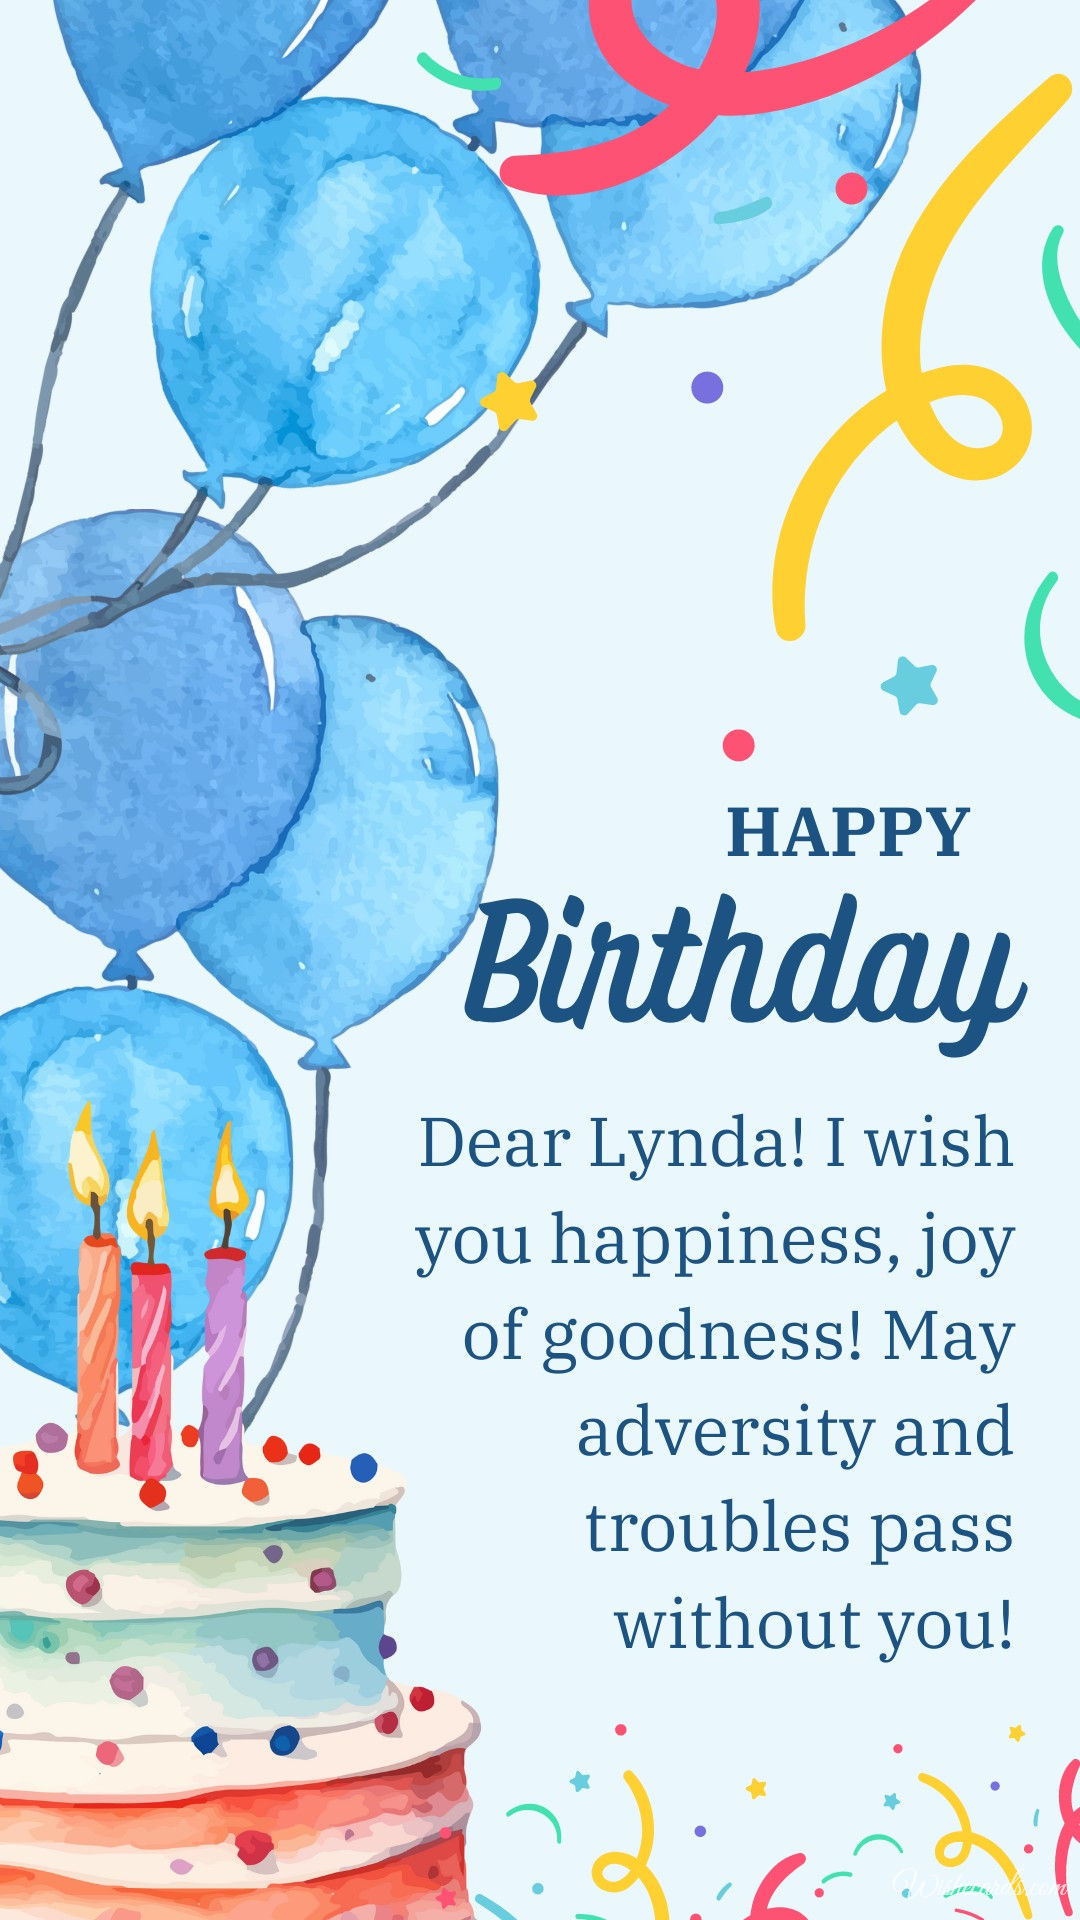 Happy Birthday Card for Lynda